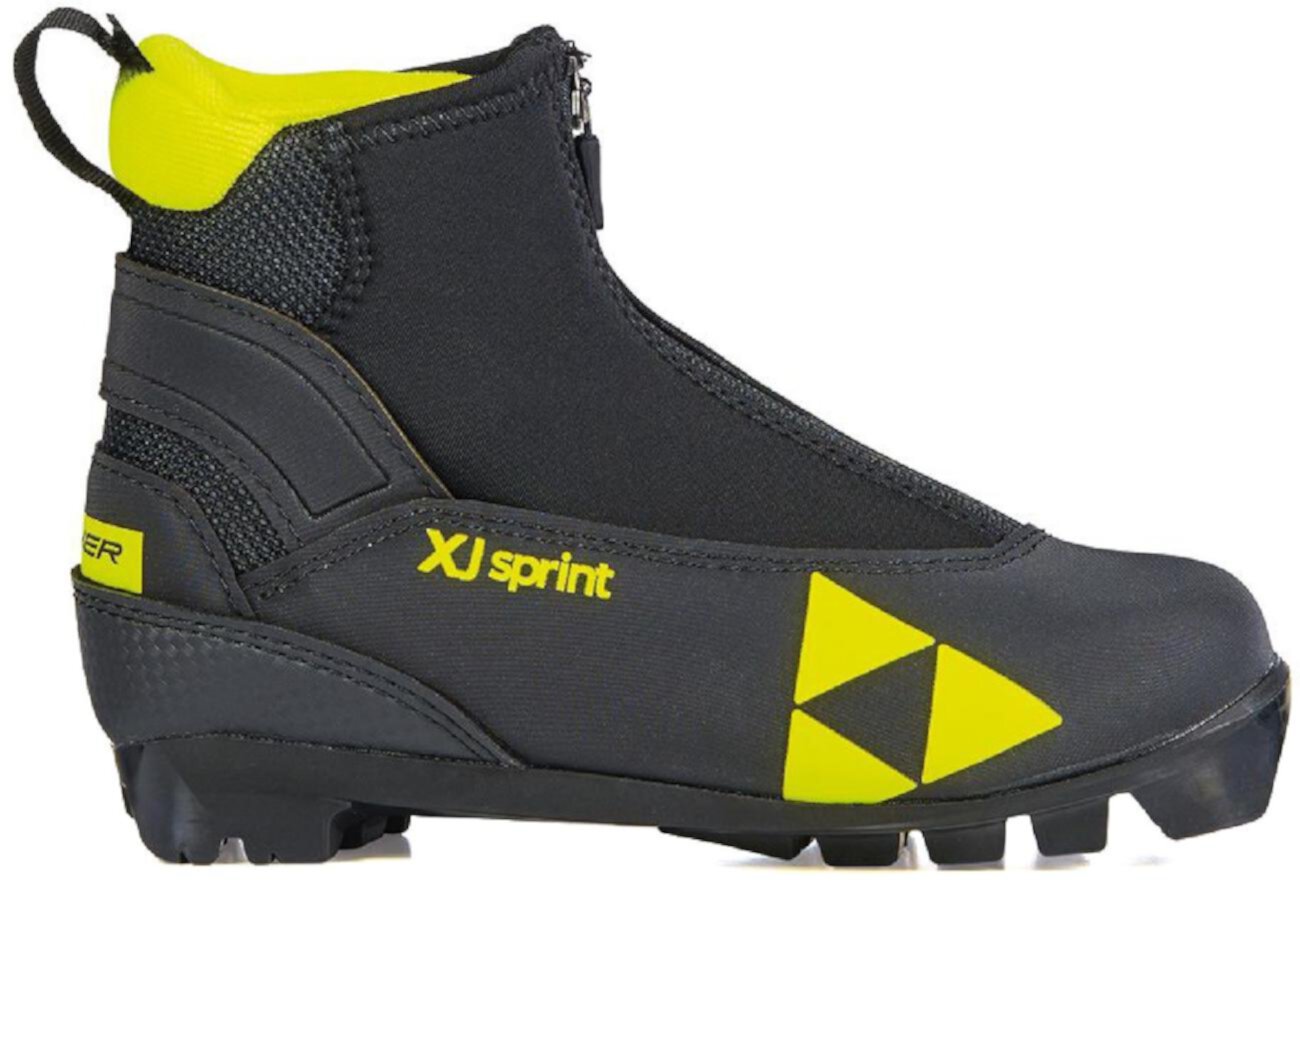 Ботинки для беговых лыж XJ Sprint Junior — детские Fischer